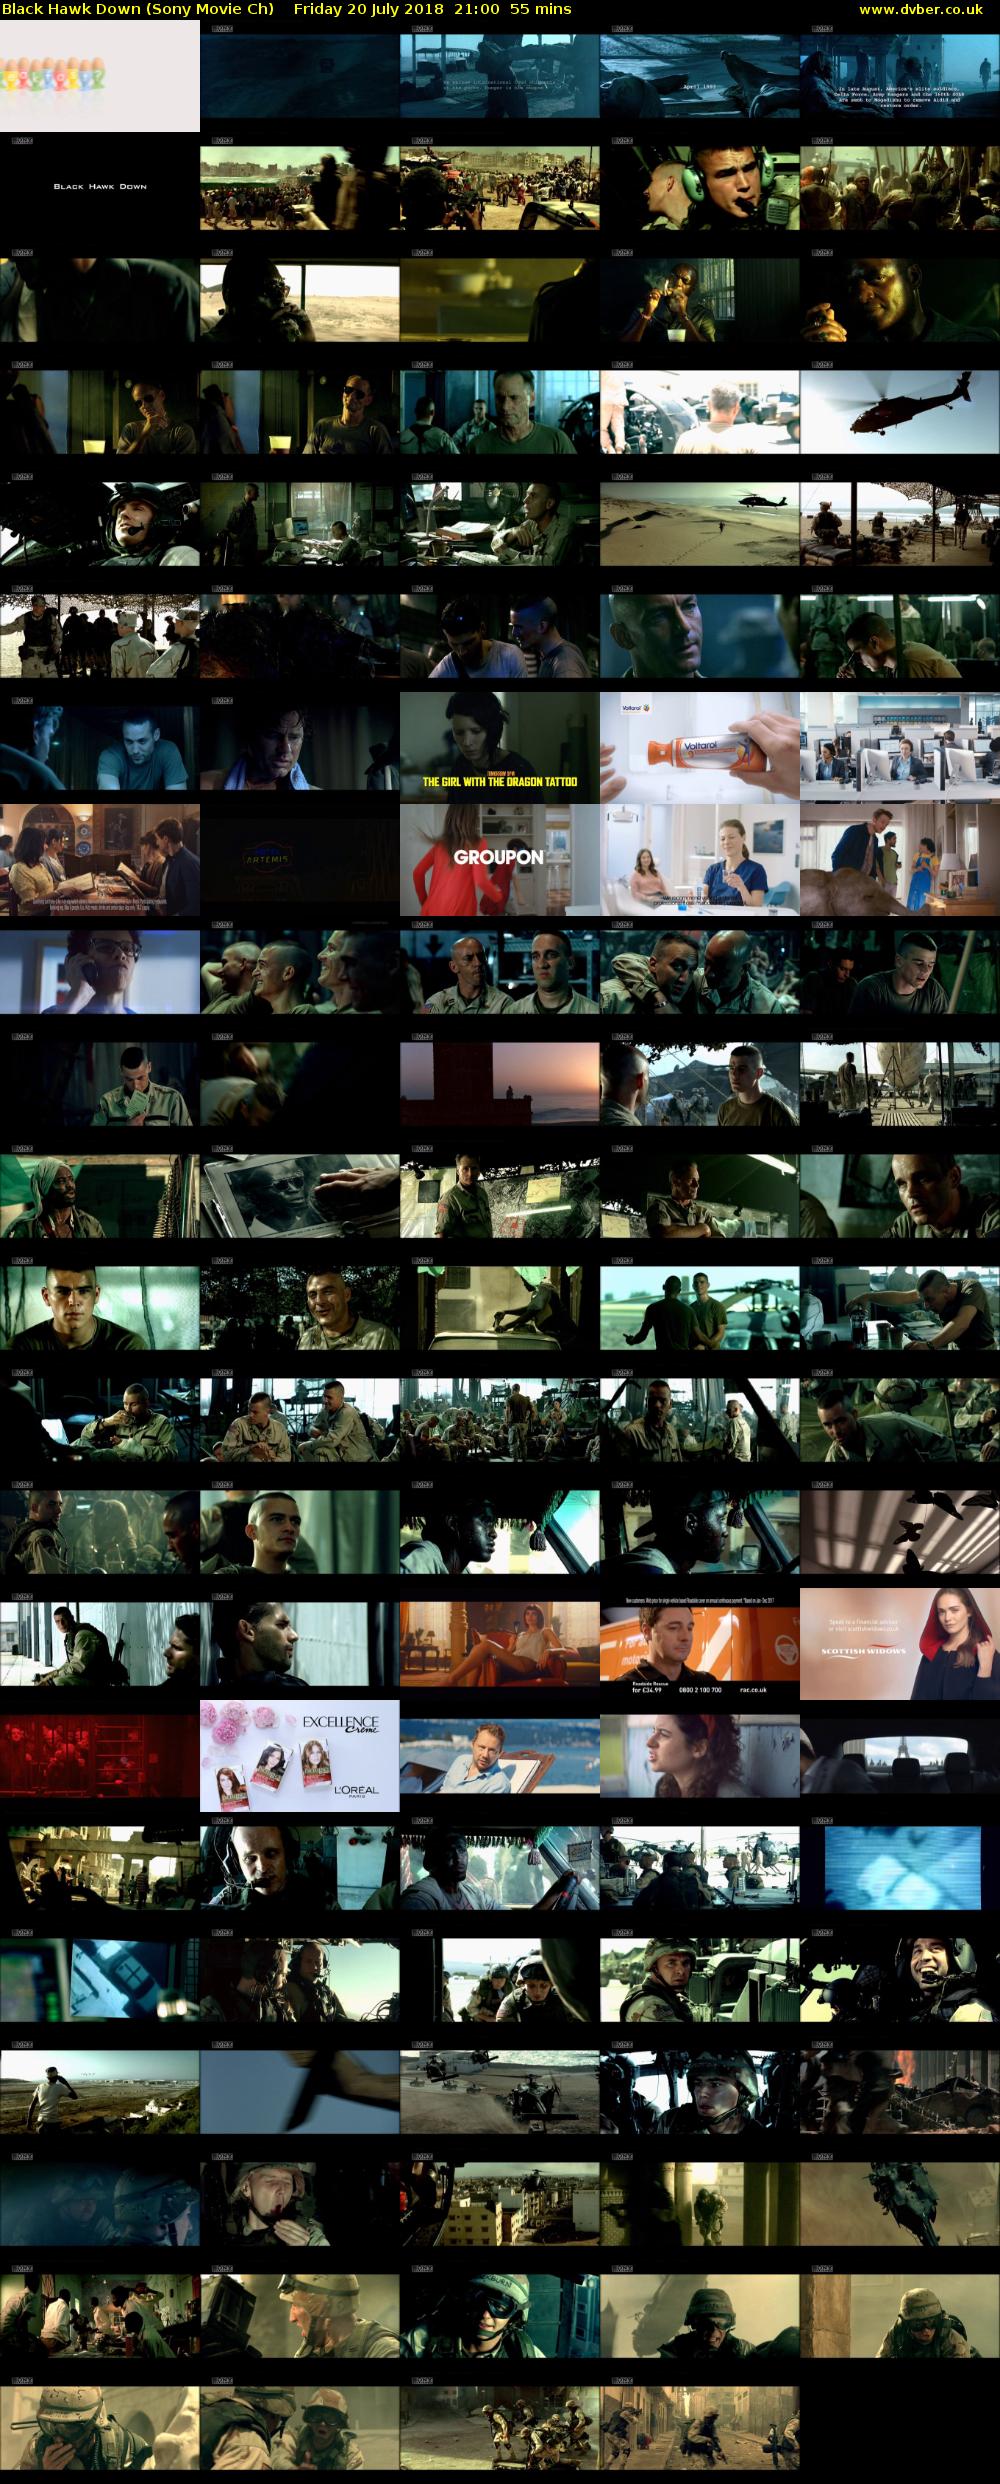 Black Hawk Down (Sony Movie Ch) Friday 20 July 2018 21:00 - 21:55